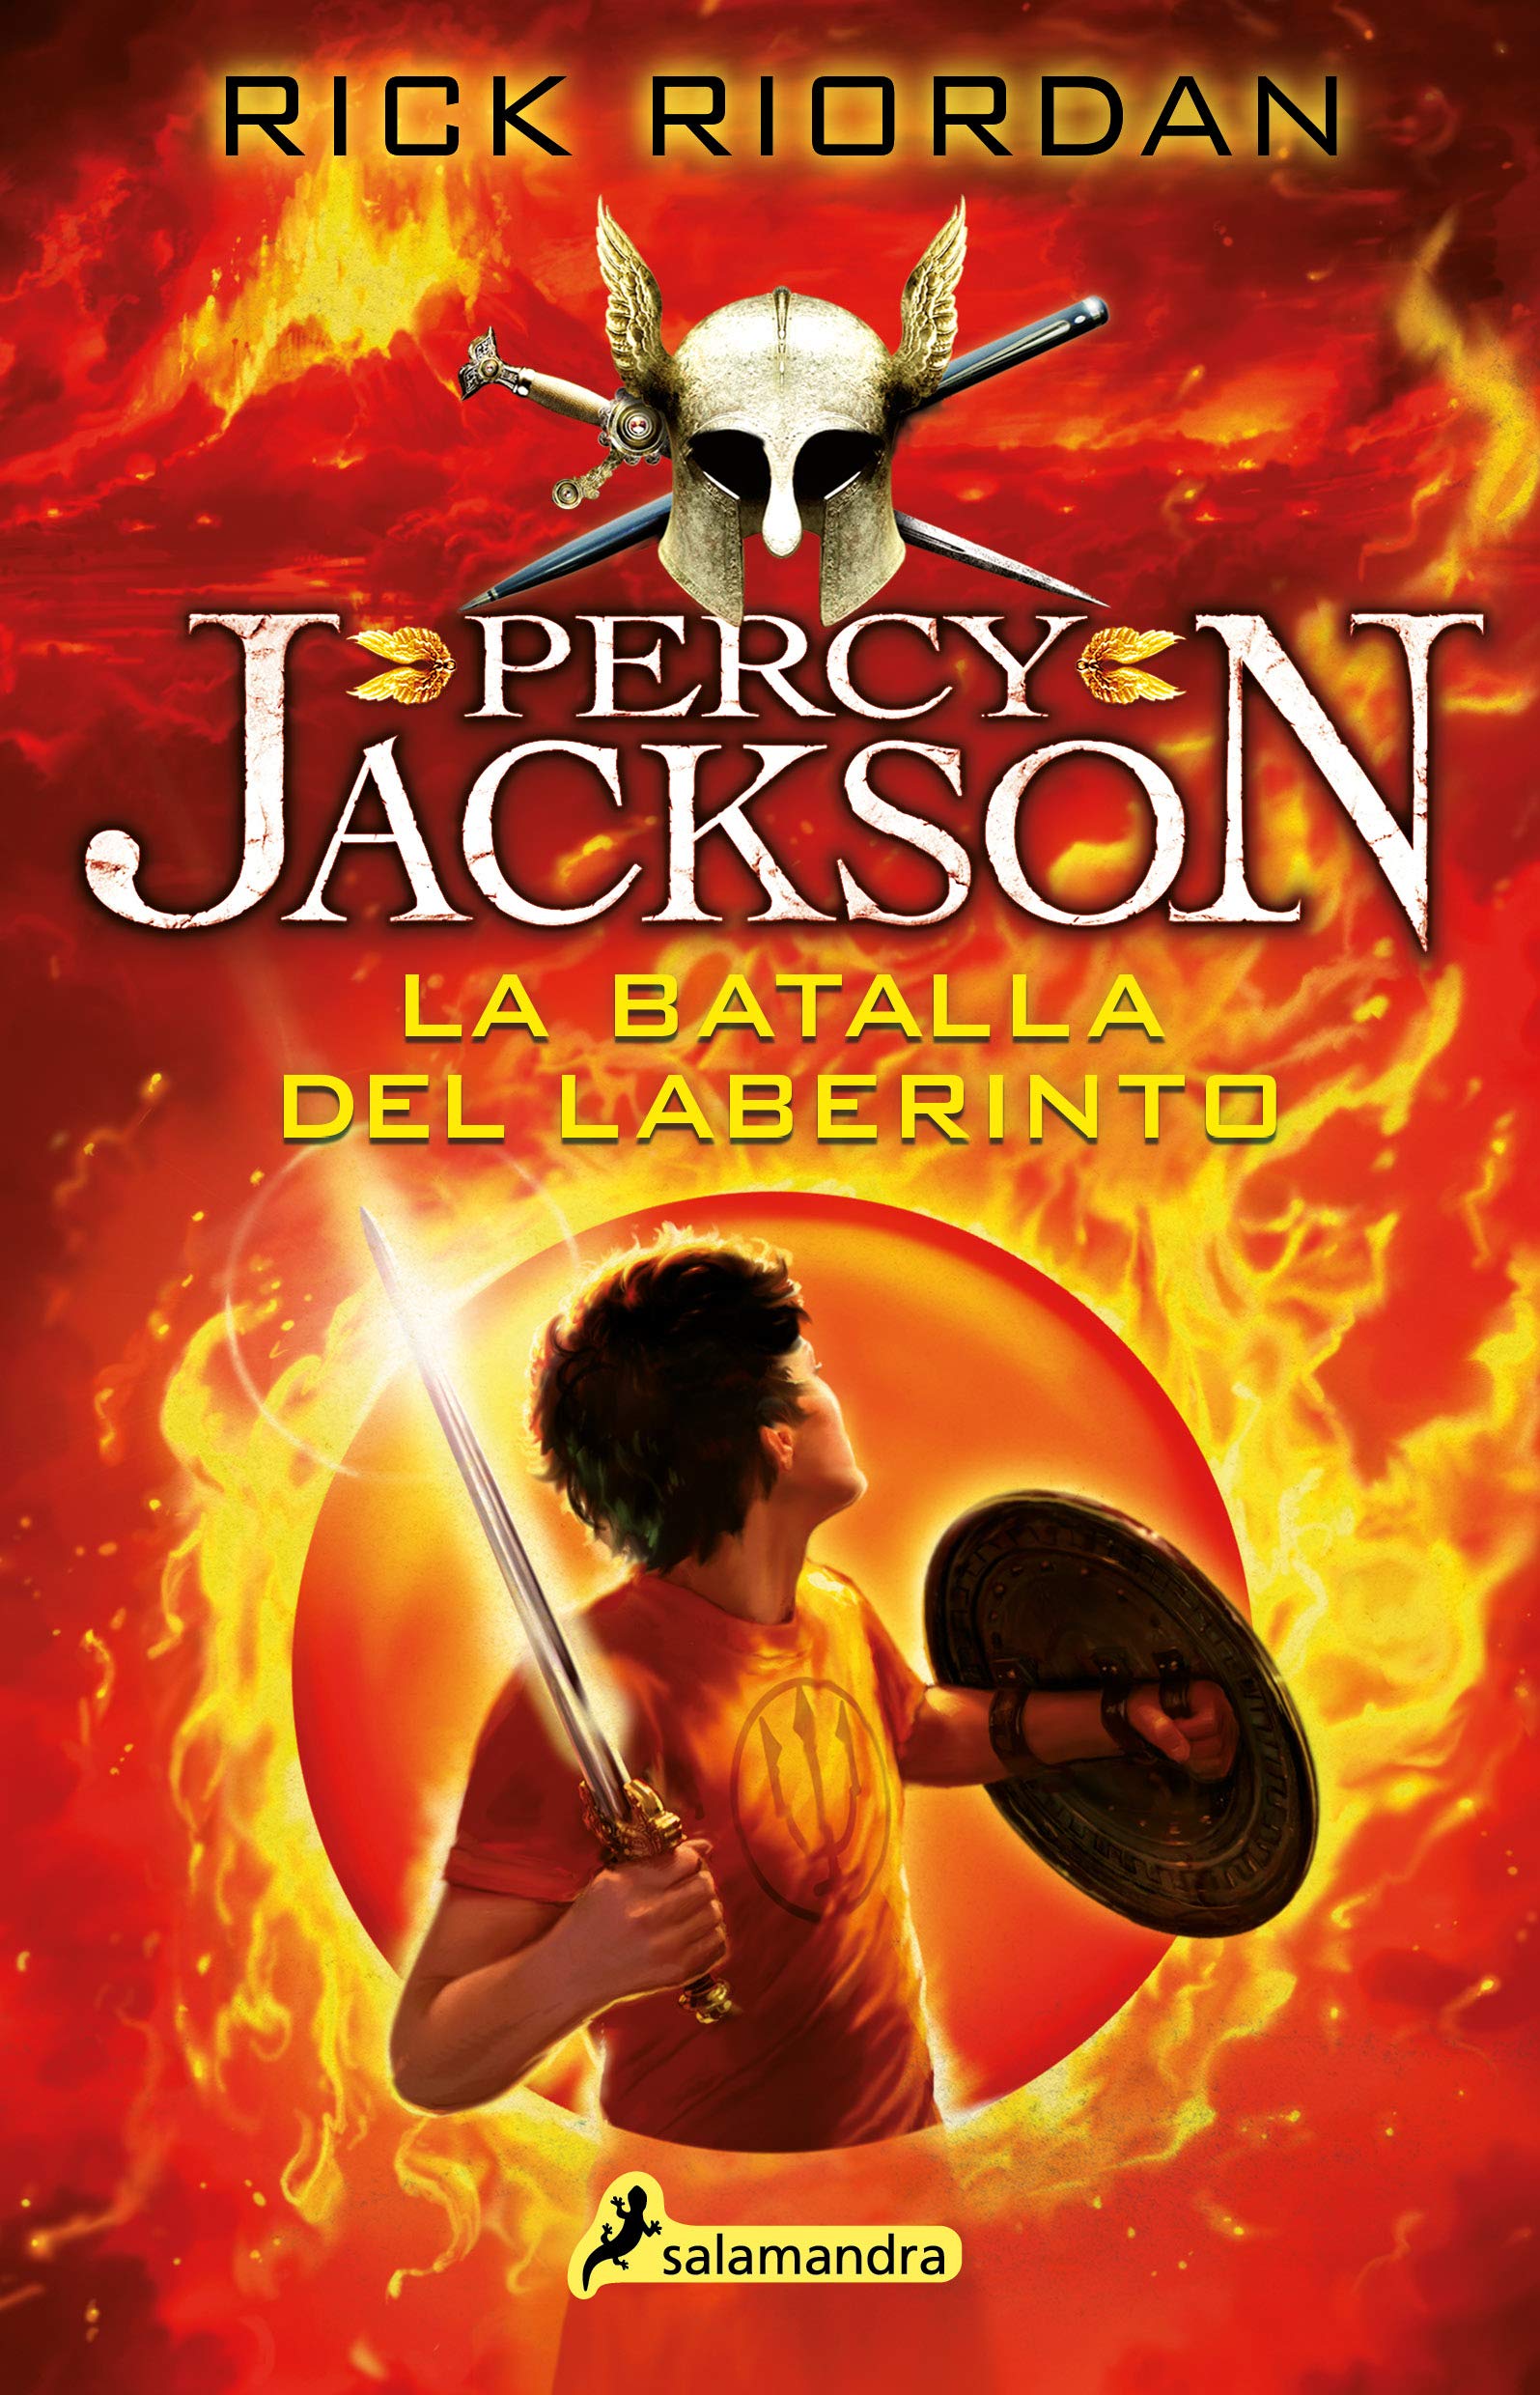 Libro: Percy Jackson: La Batalla del Laberinto por Rick Riordan